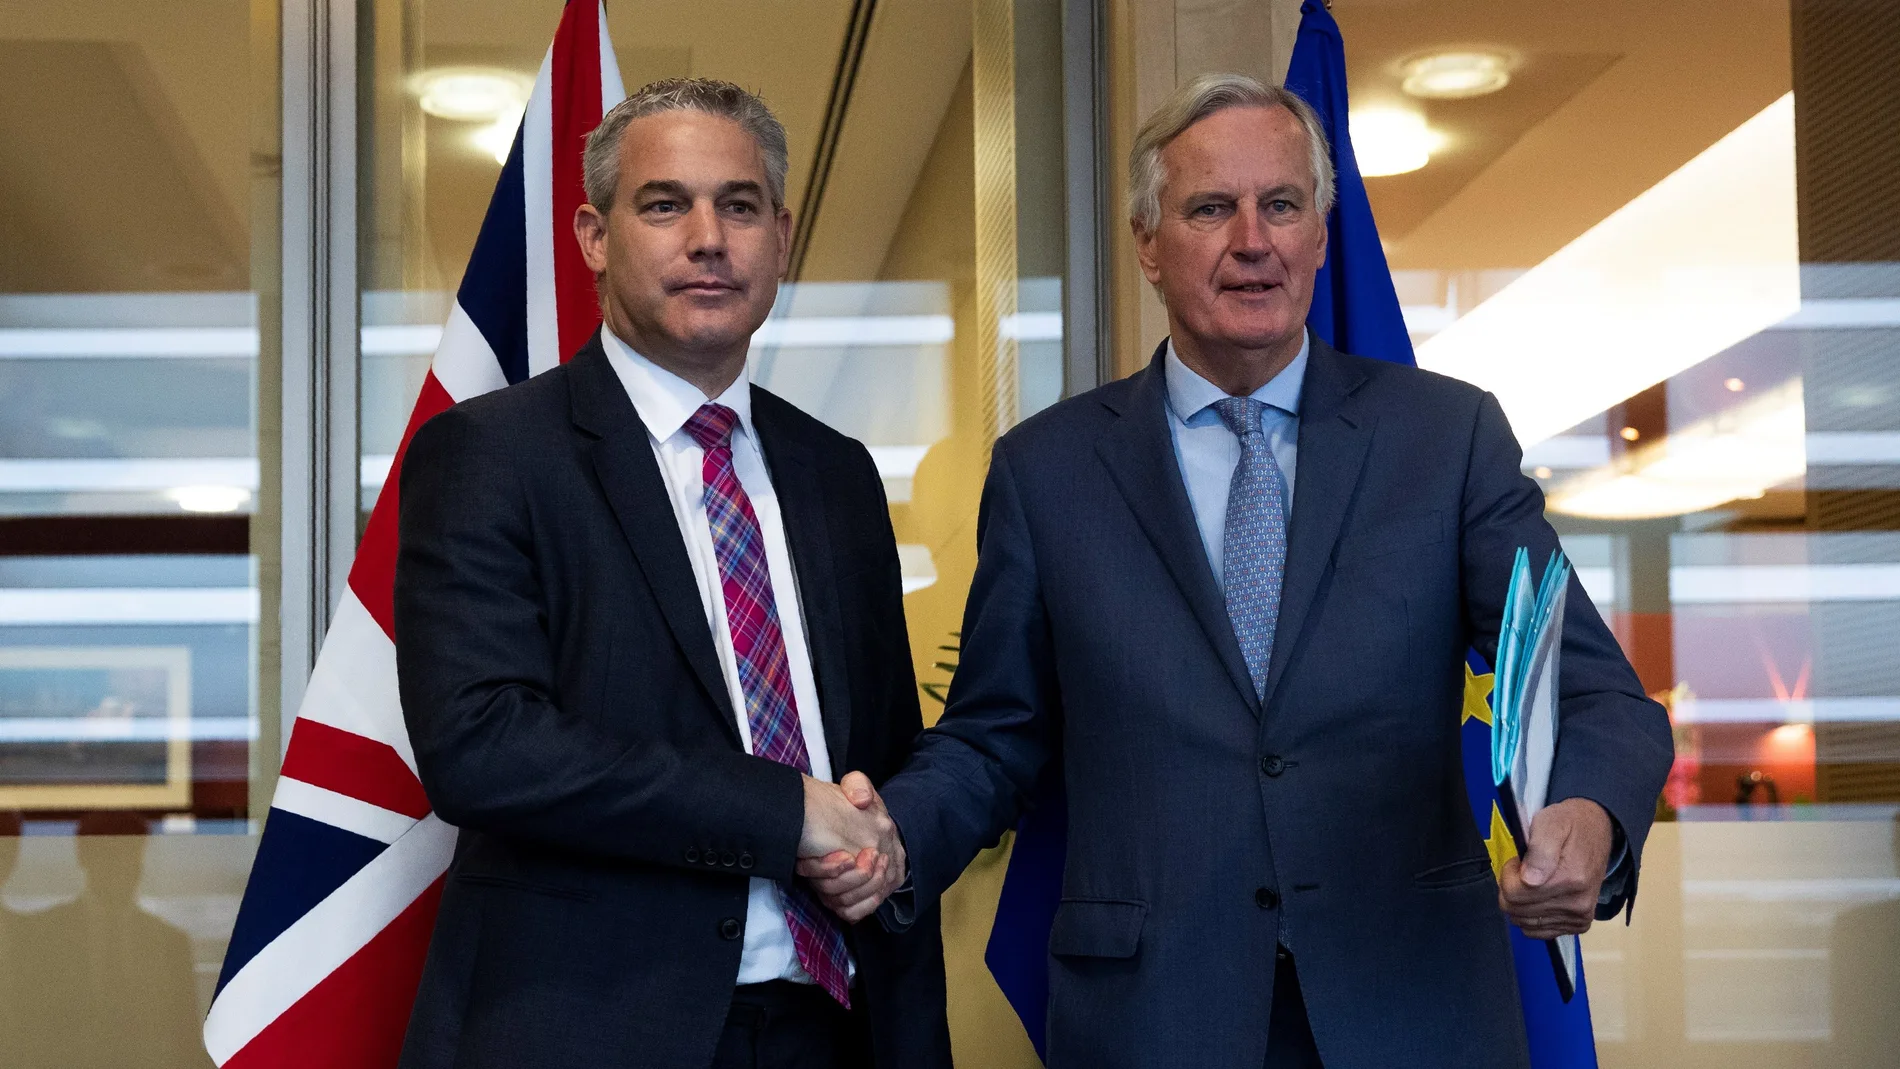 Los principales negociadores de Brexit de la Unión Europea, Michel Barnier, y Gran Bretaña, Steve Barclay.